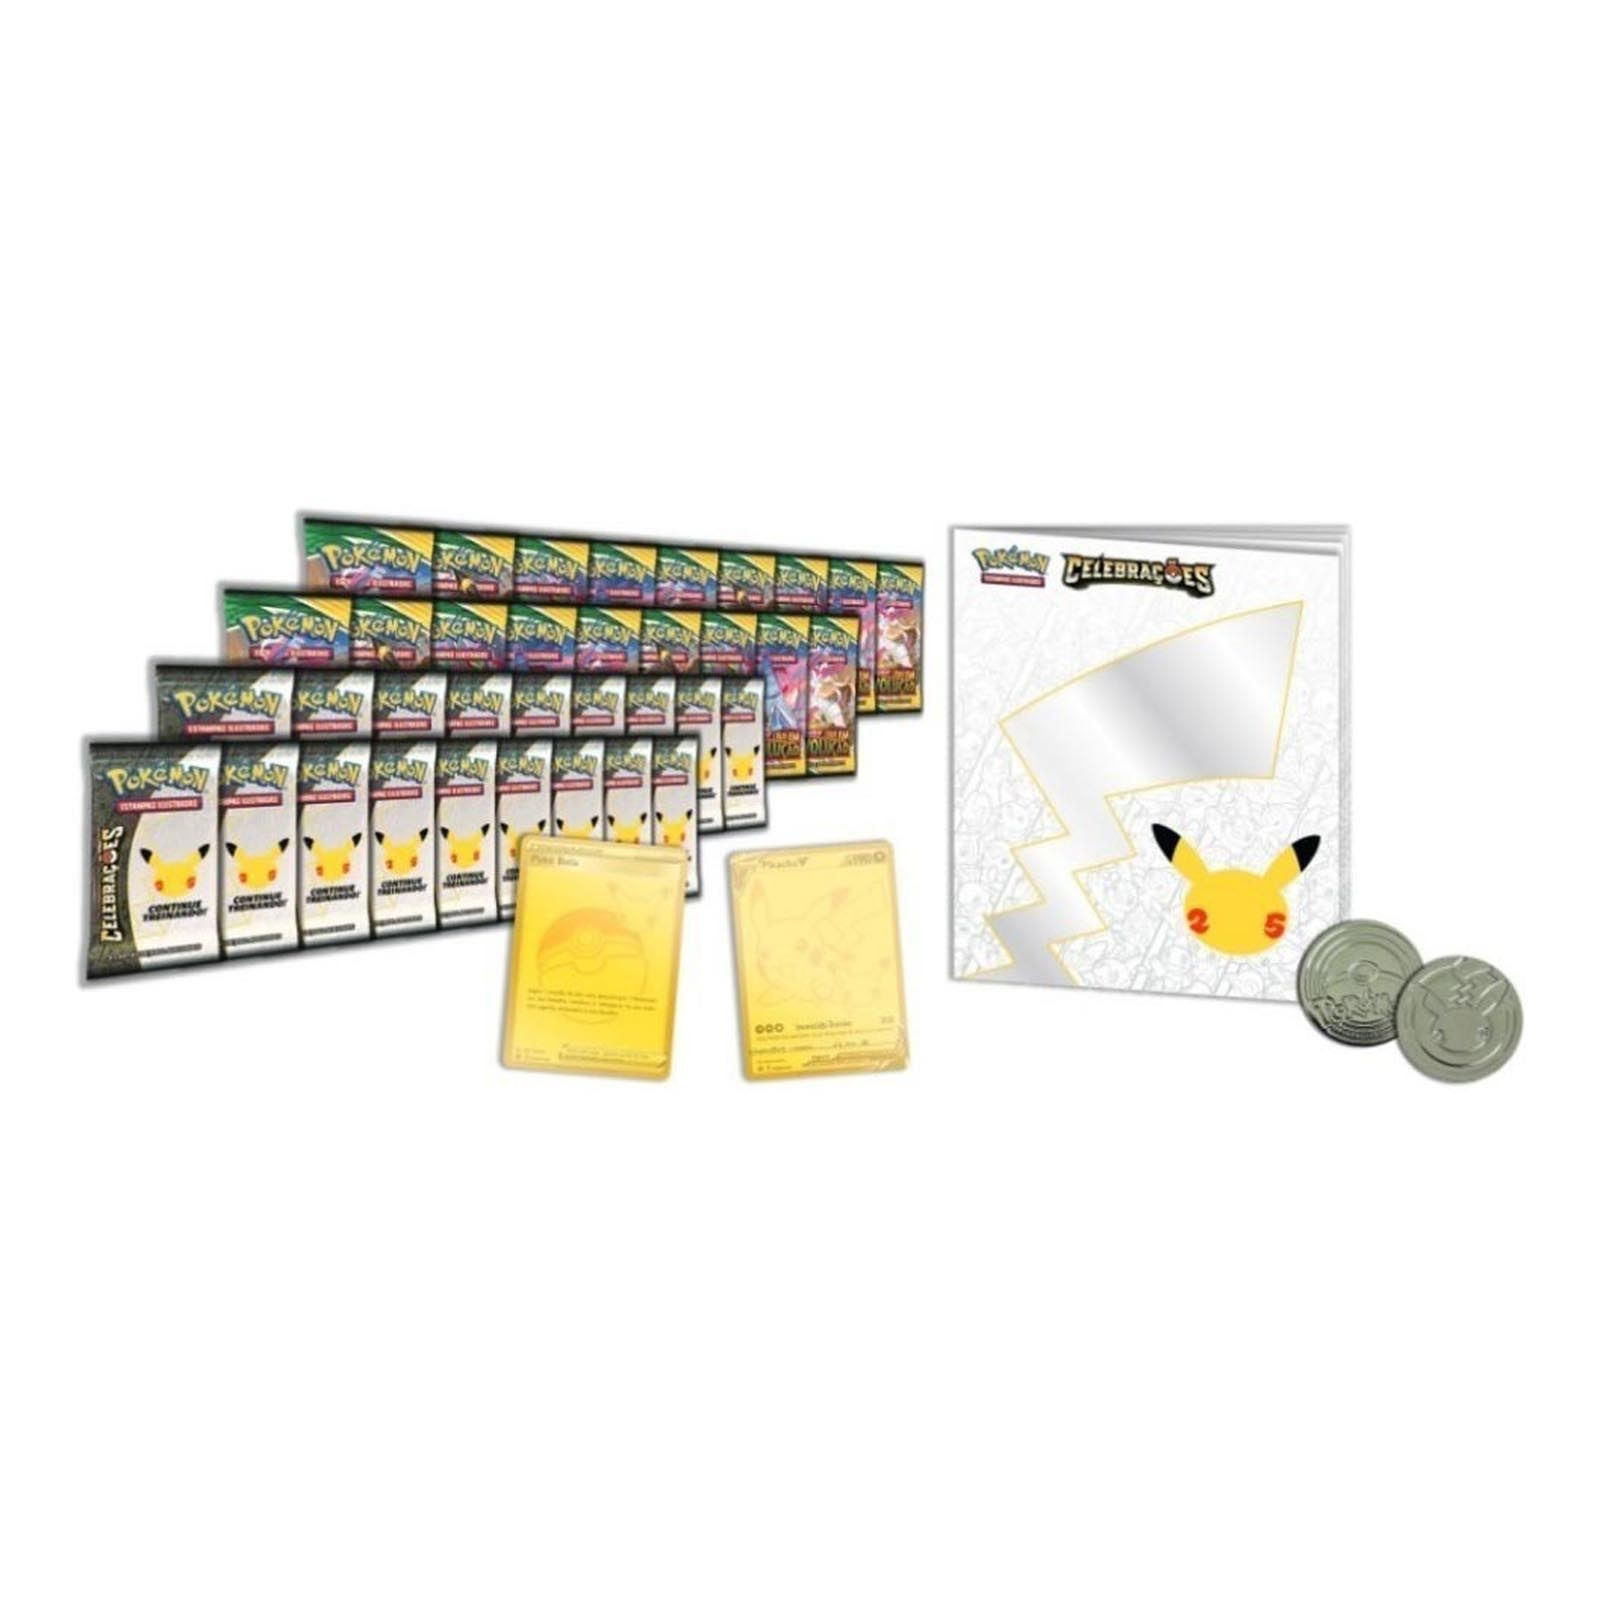 Box Pokémon Coleção Dourada Celebrações 182 Cartas